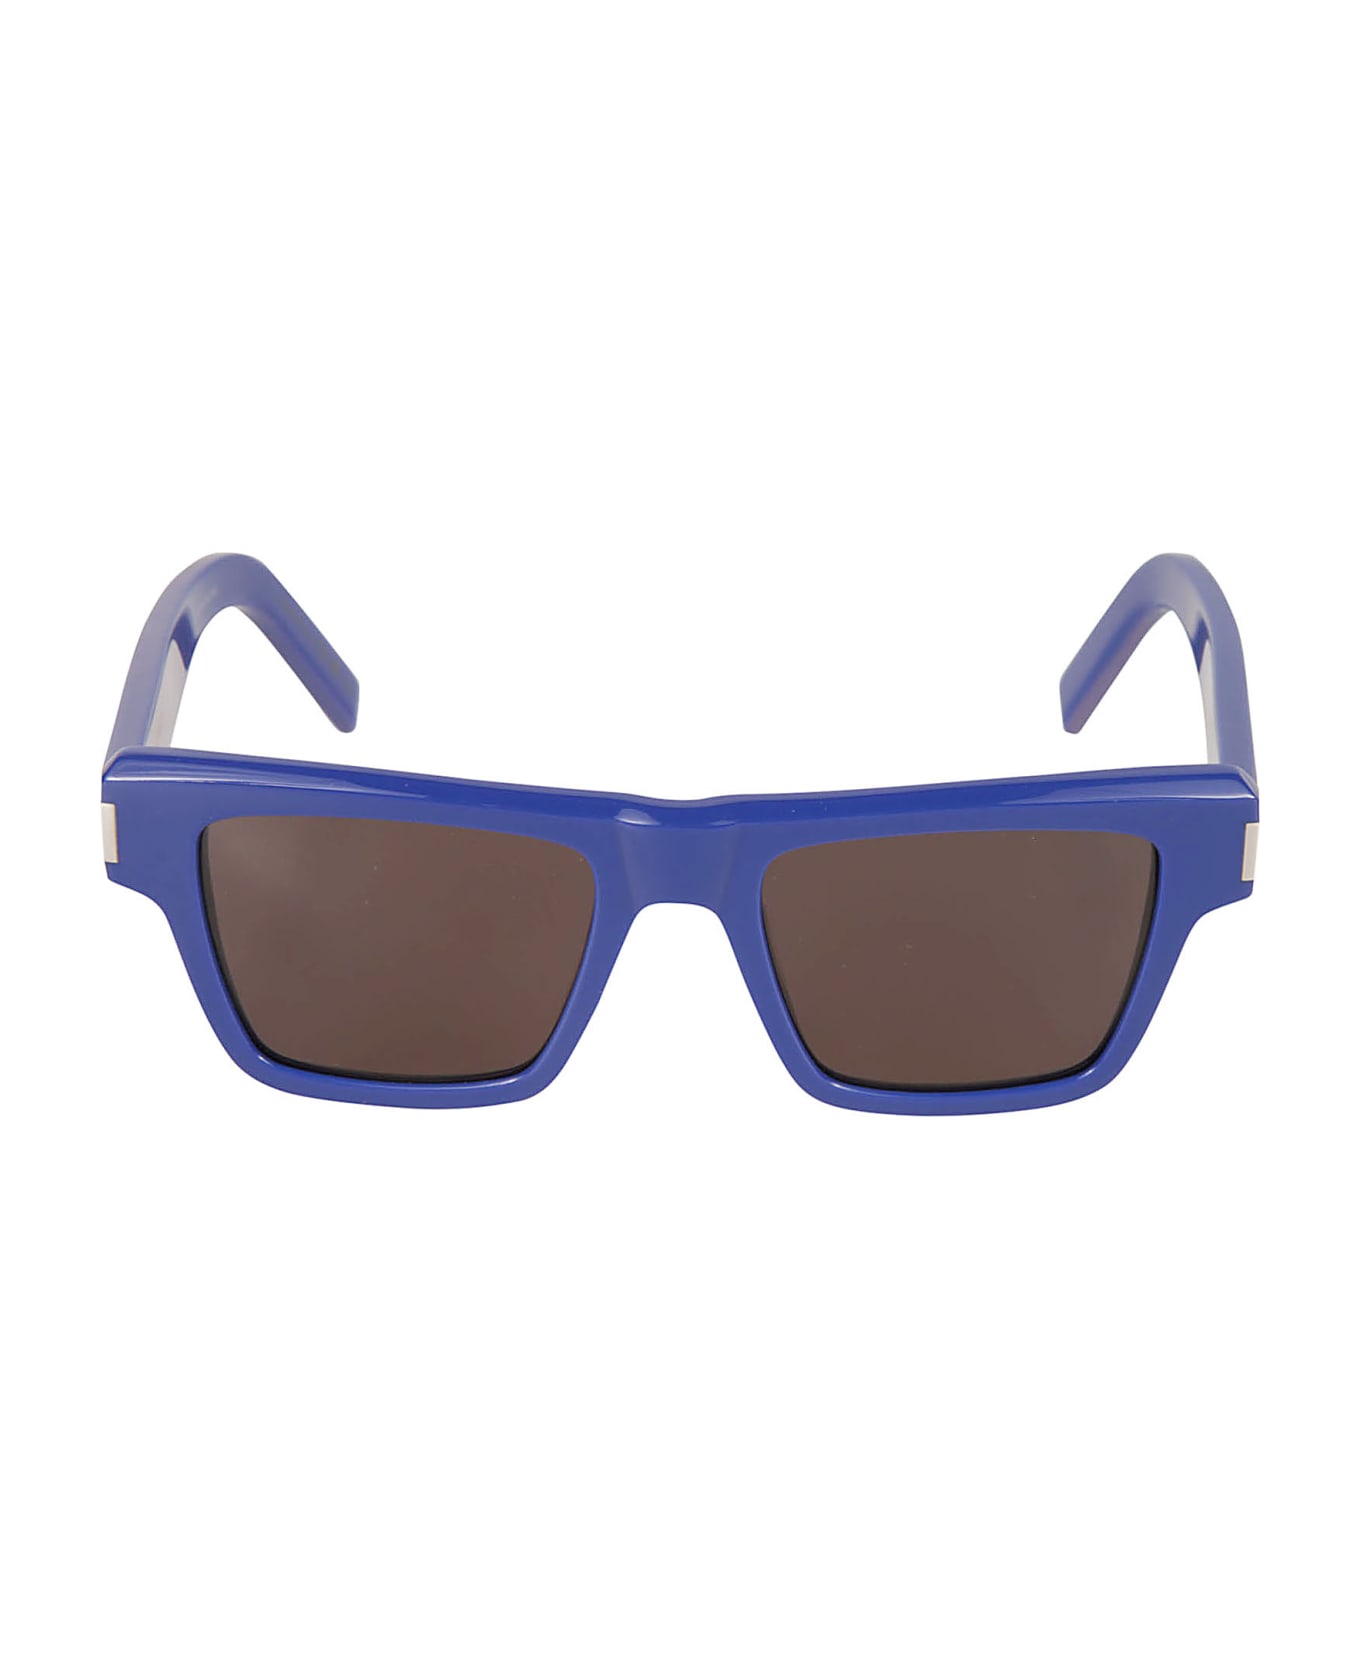 Saint Laurent Eyewear Sl 469 Sunglasses - Blue